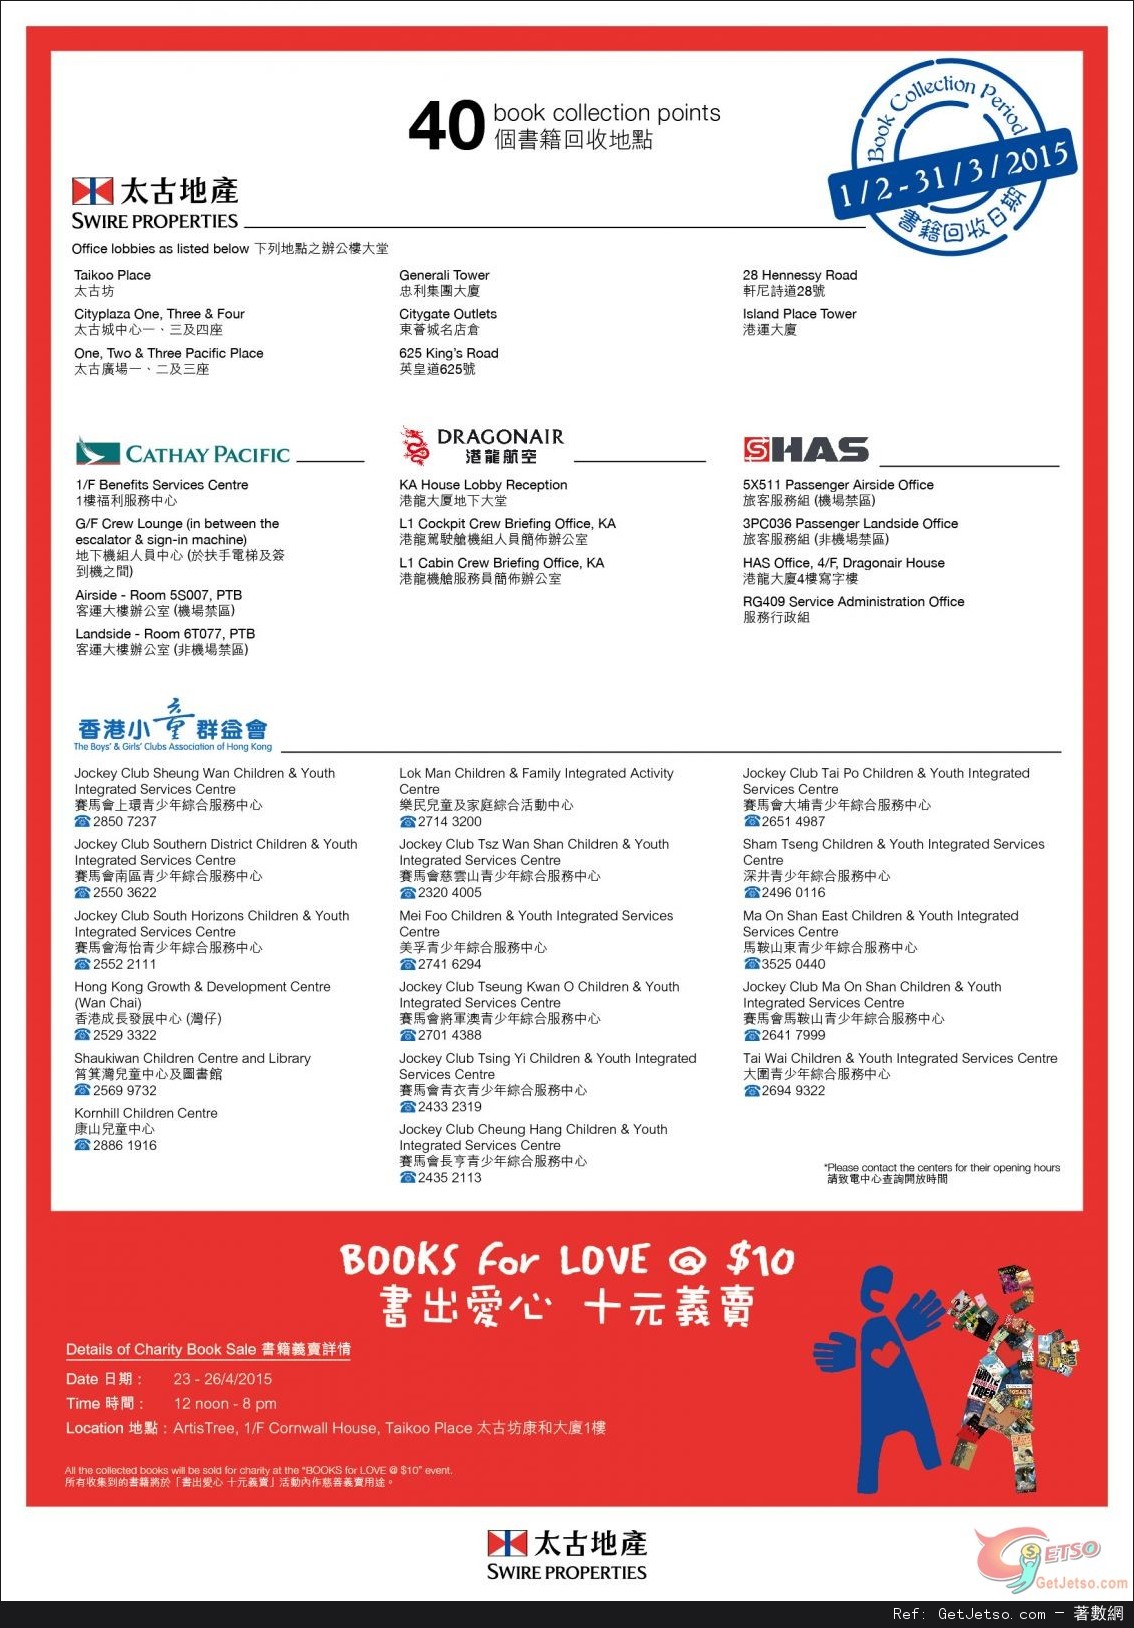 太古地產X香港小童群益會「書出愛心十元義賣」活動(至15年3月31日)圖片2